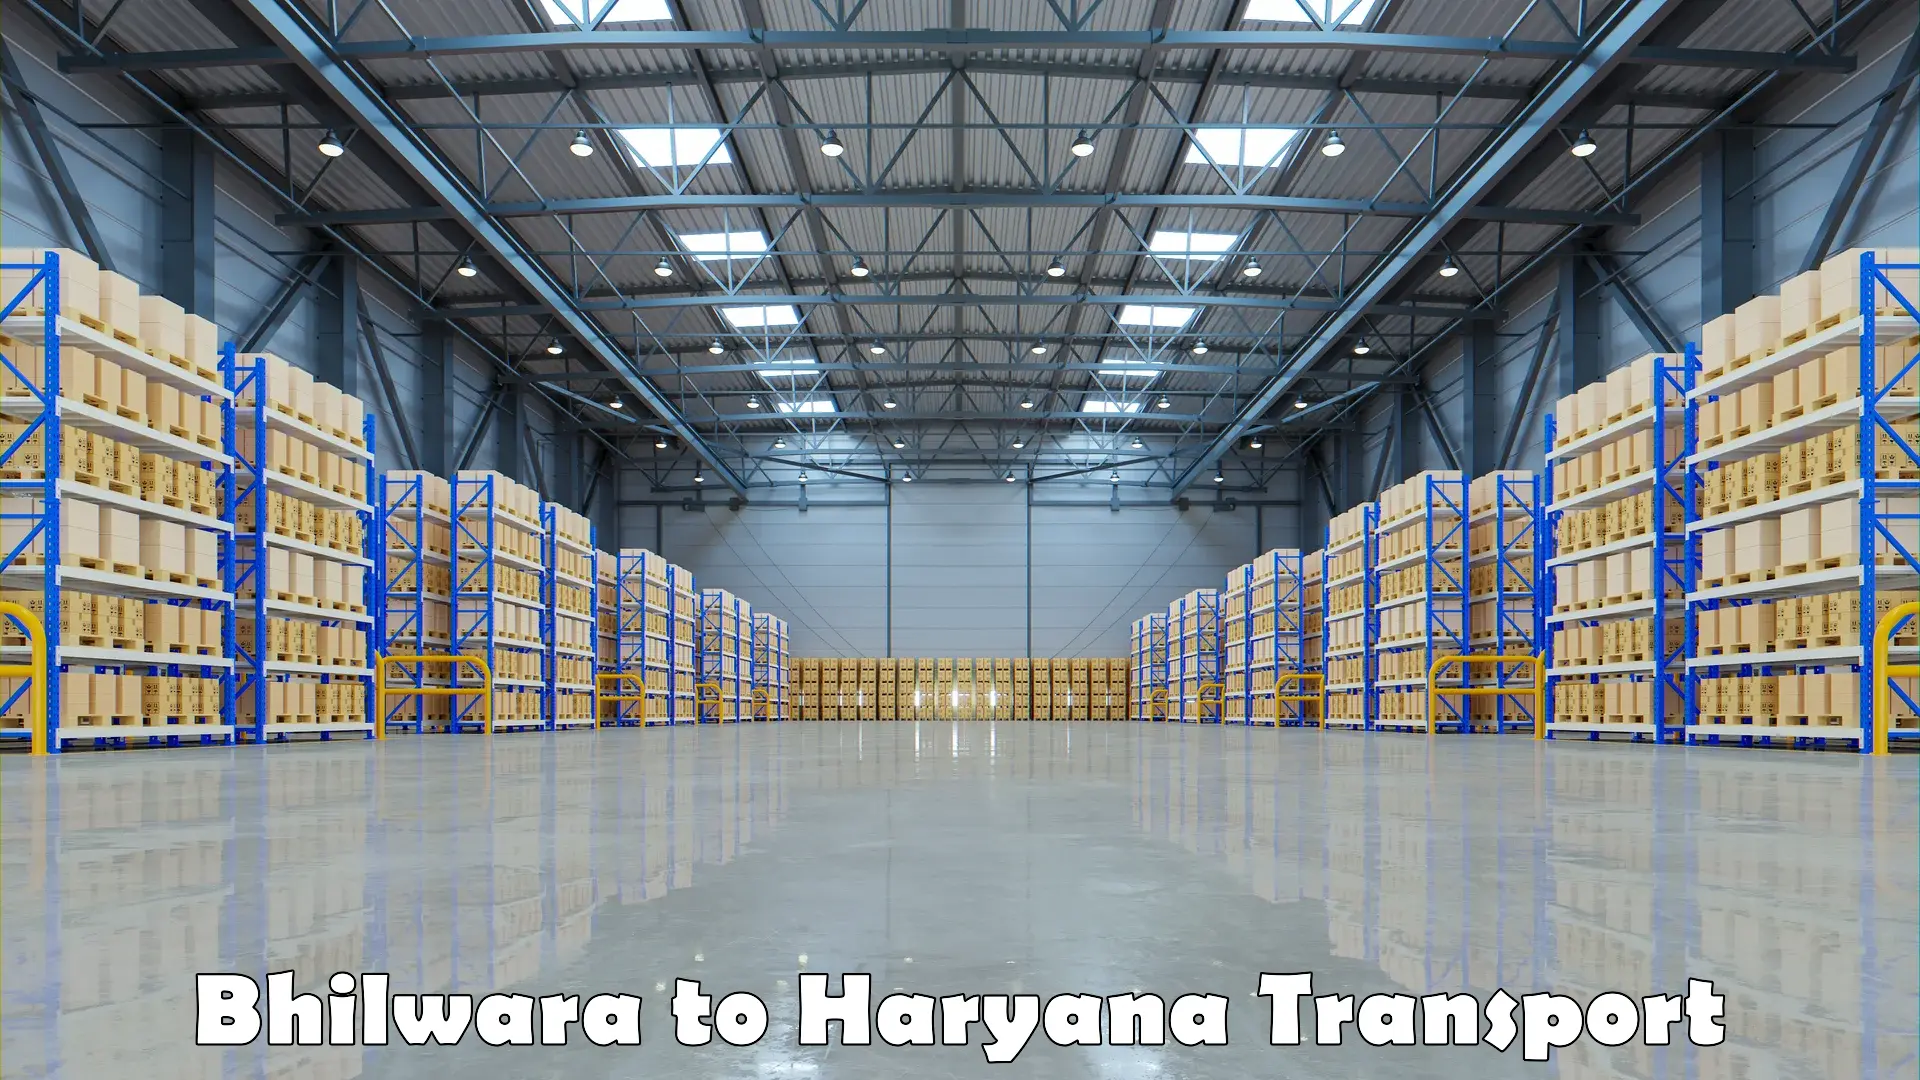 Furniture transport service Bhilwara to Haryana